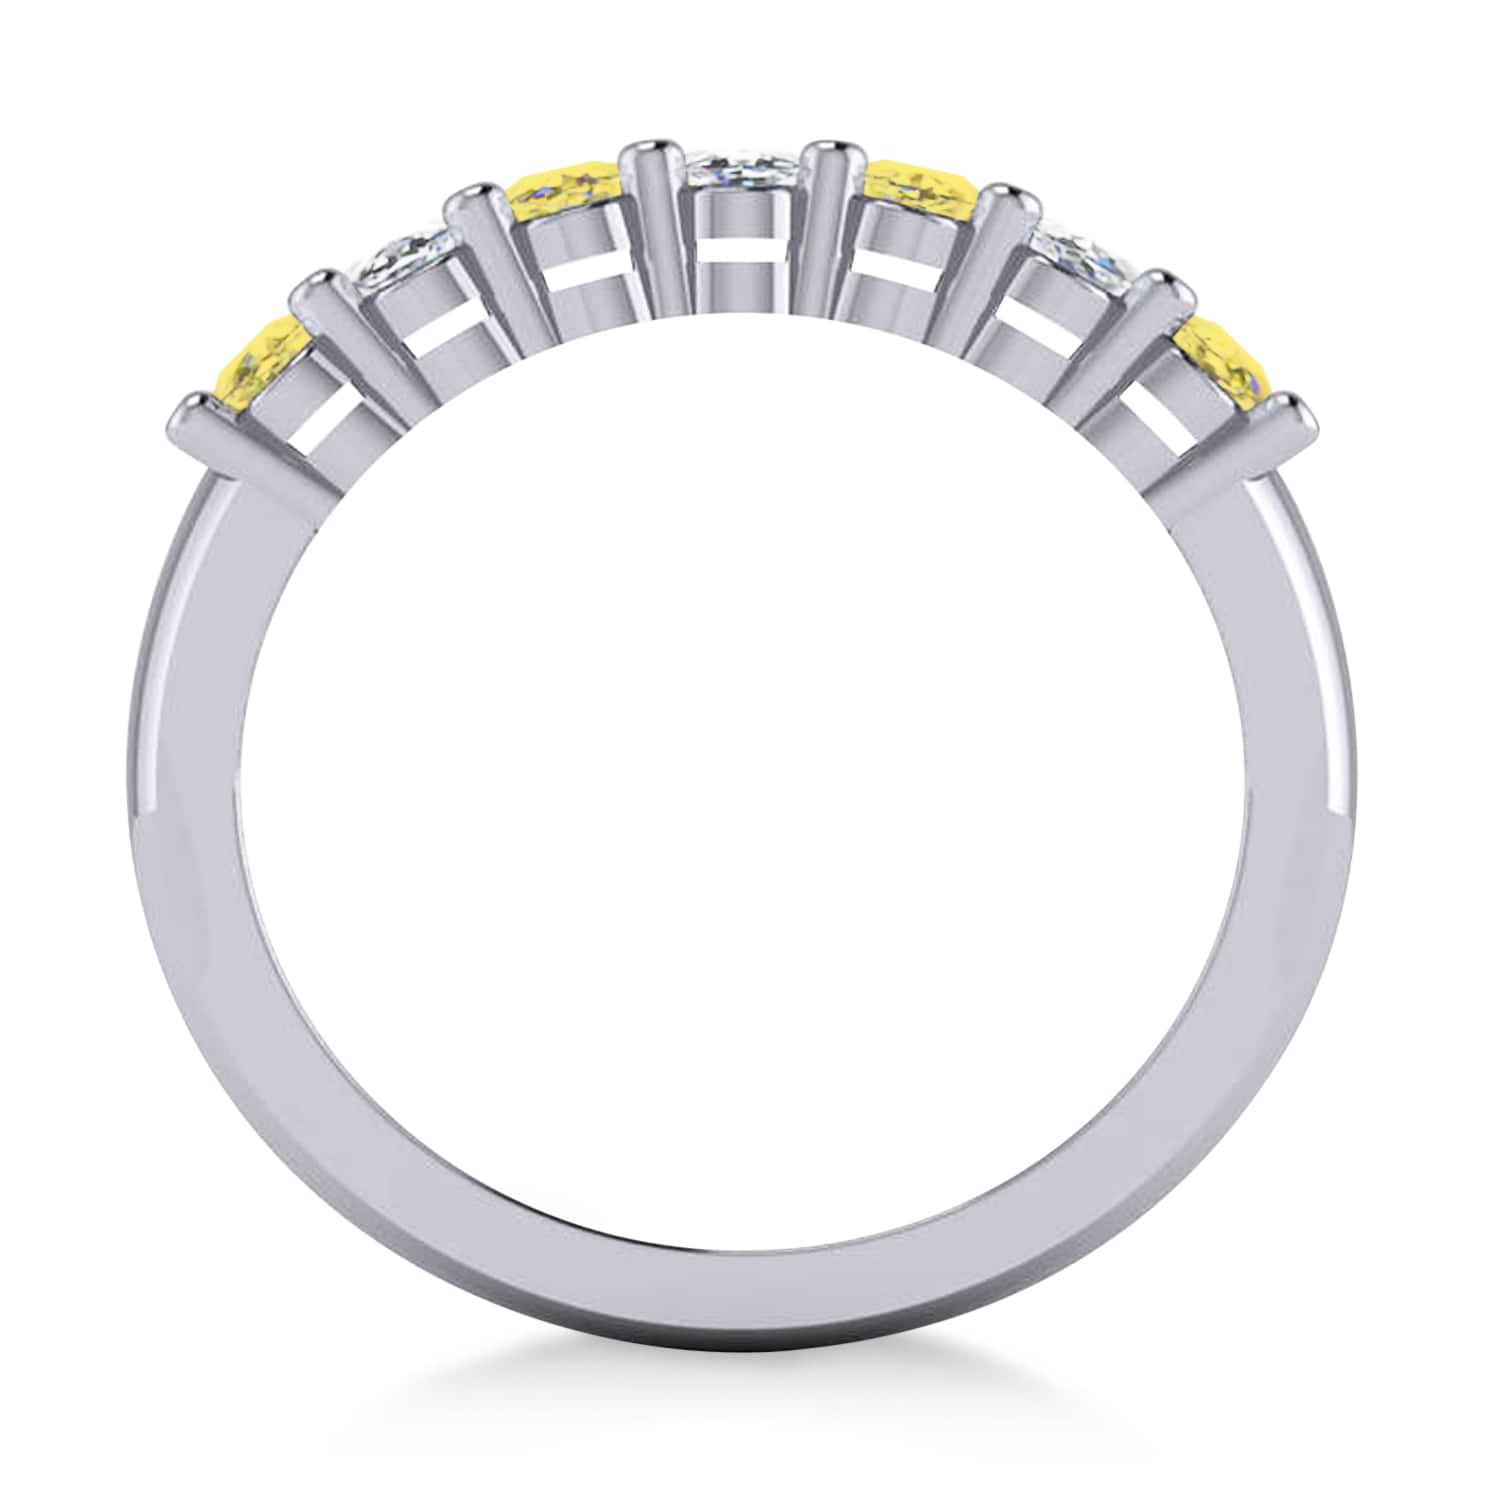 Oval Yellow & White Diamond Seven Stone Ring 14k White Gold (1.40ct)